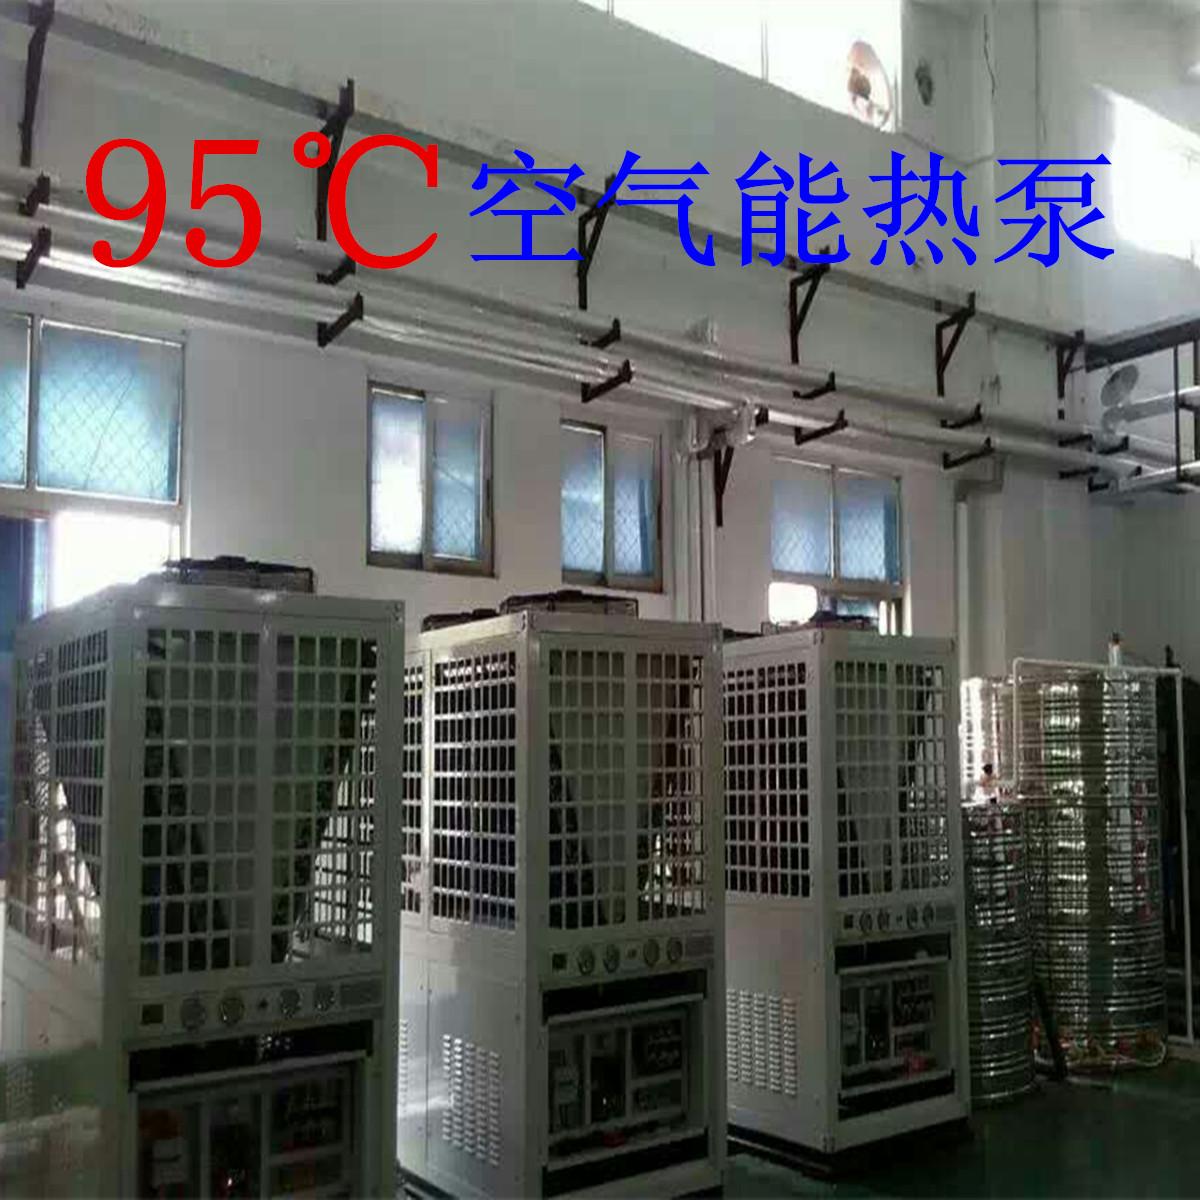 95度空气能热泵 95度空气源热泵